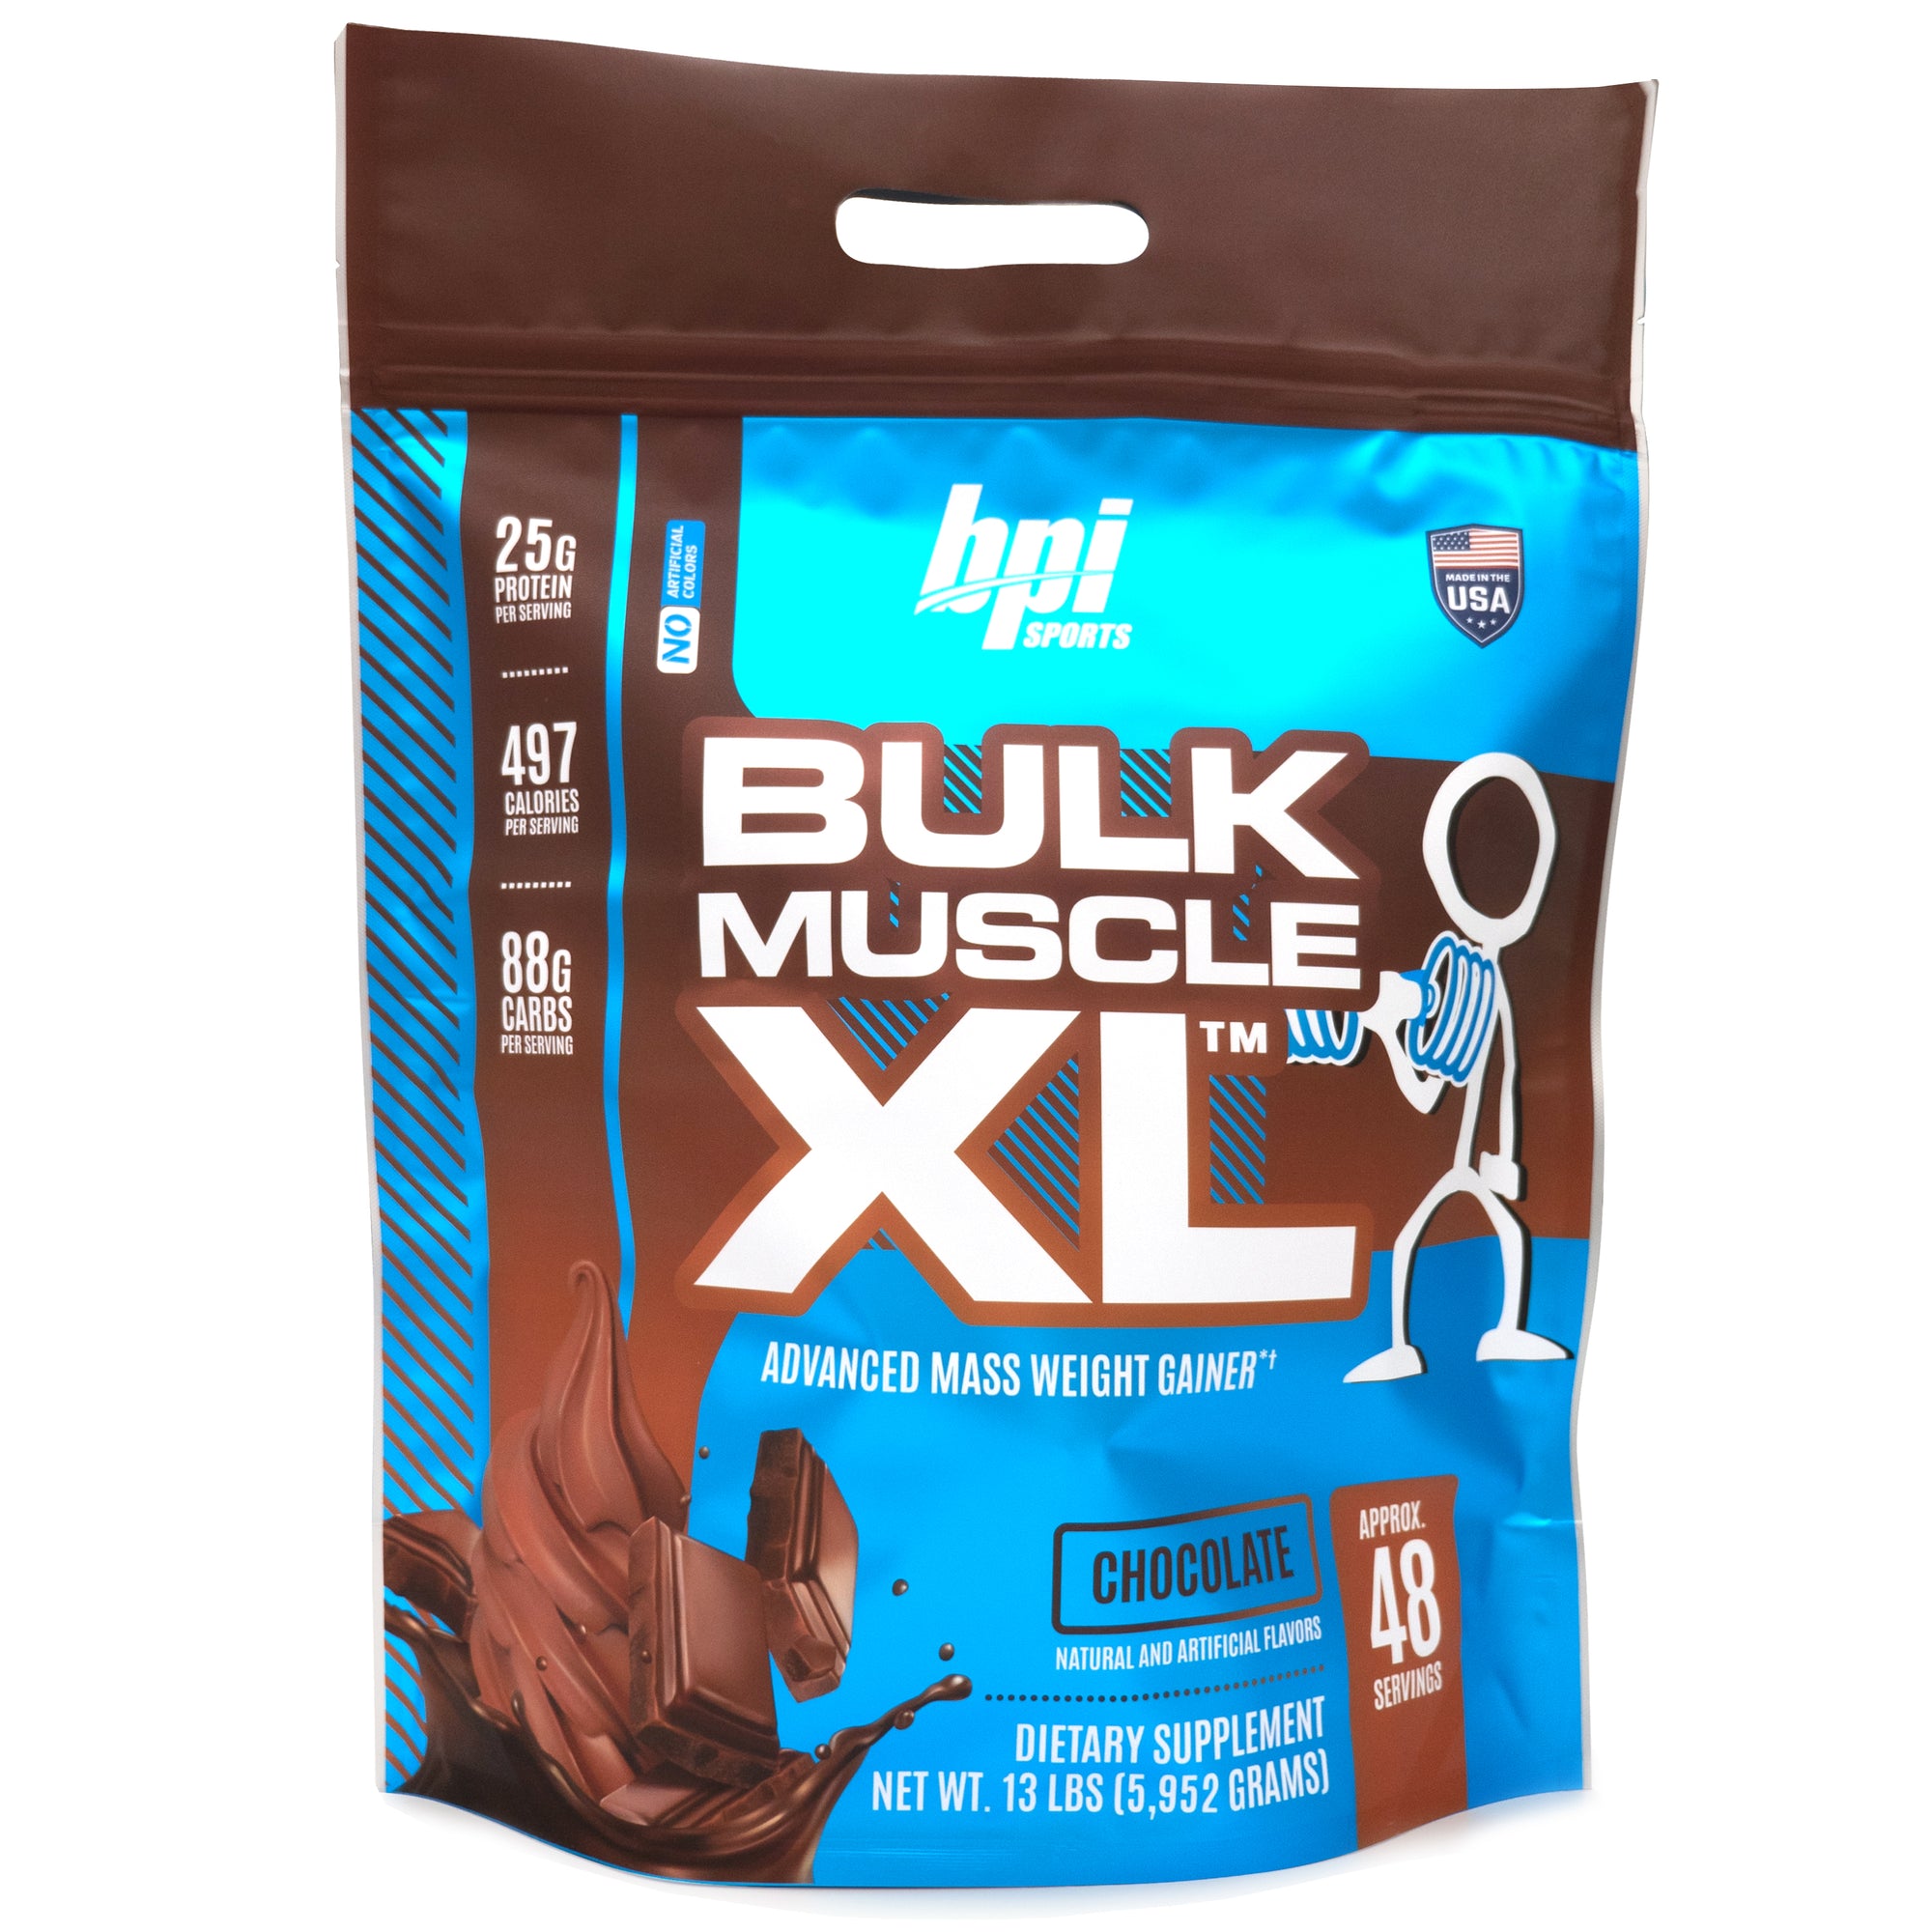 Bulk Muscle XL™ - Advanced Mass Weight Gainer